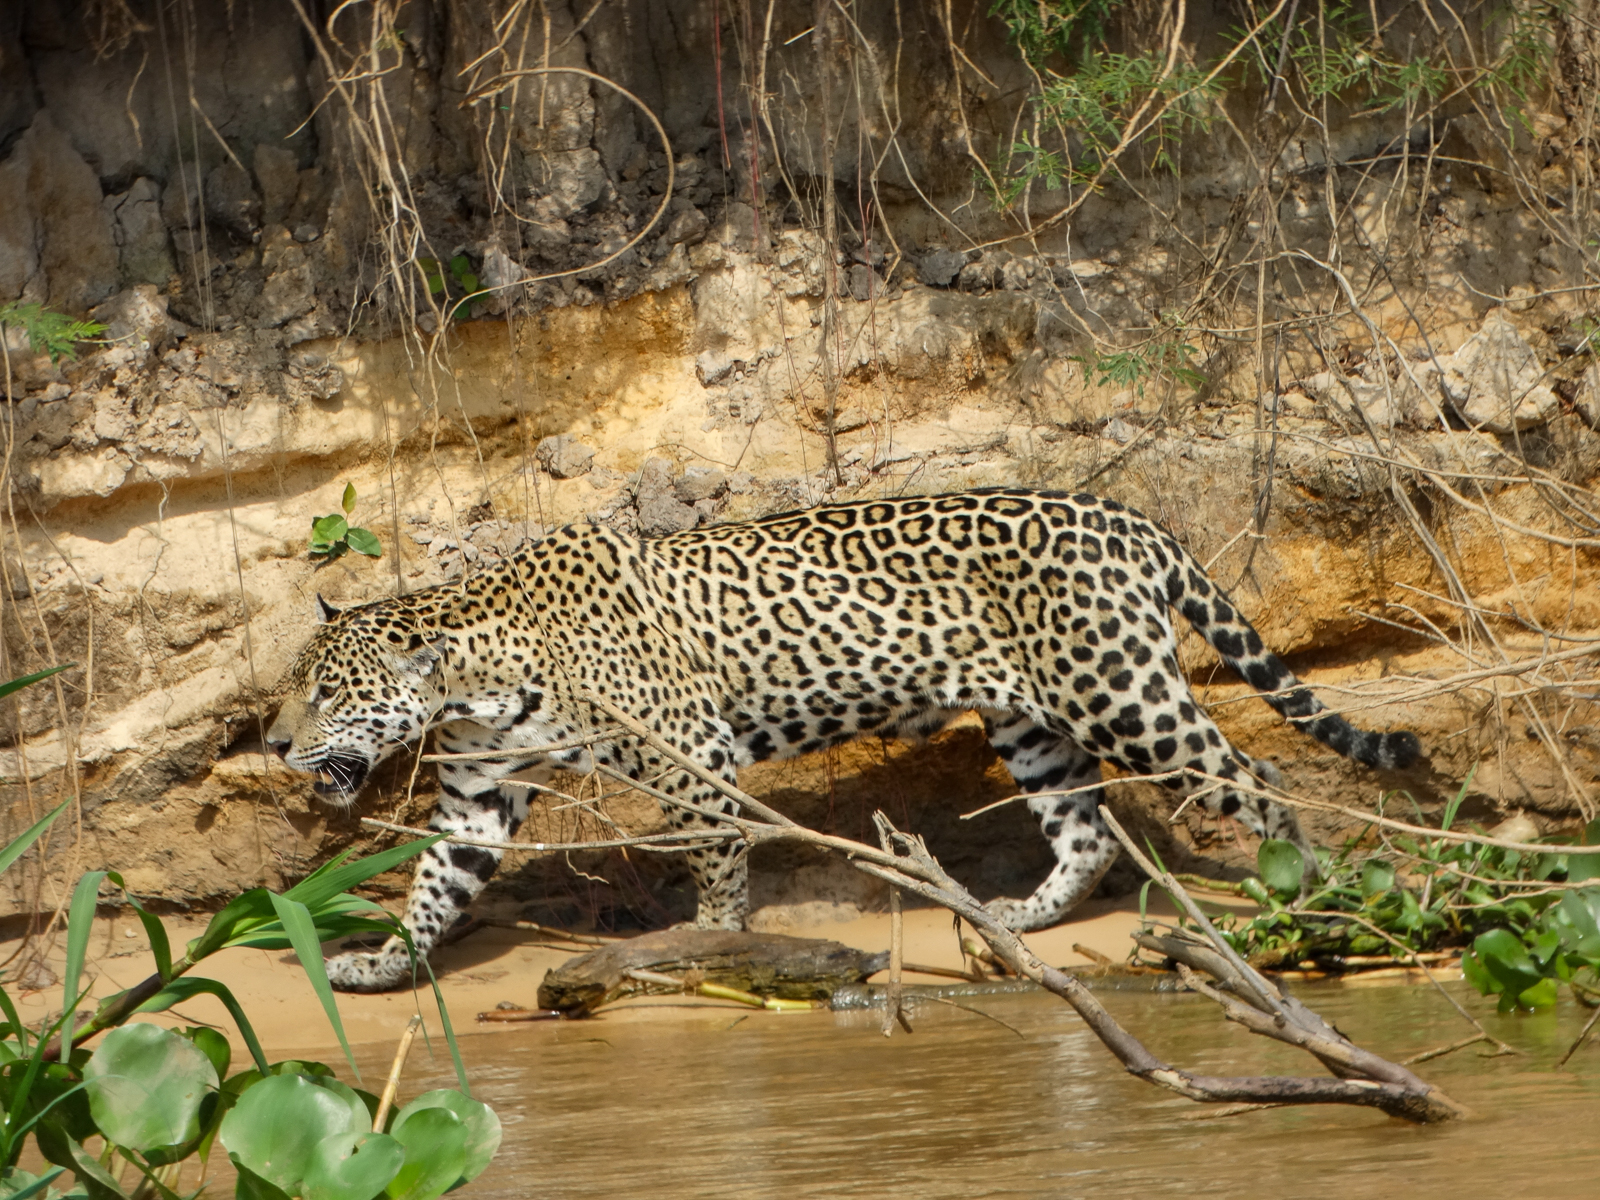 Jaguar along river in Brazil